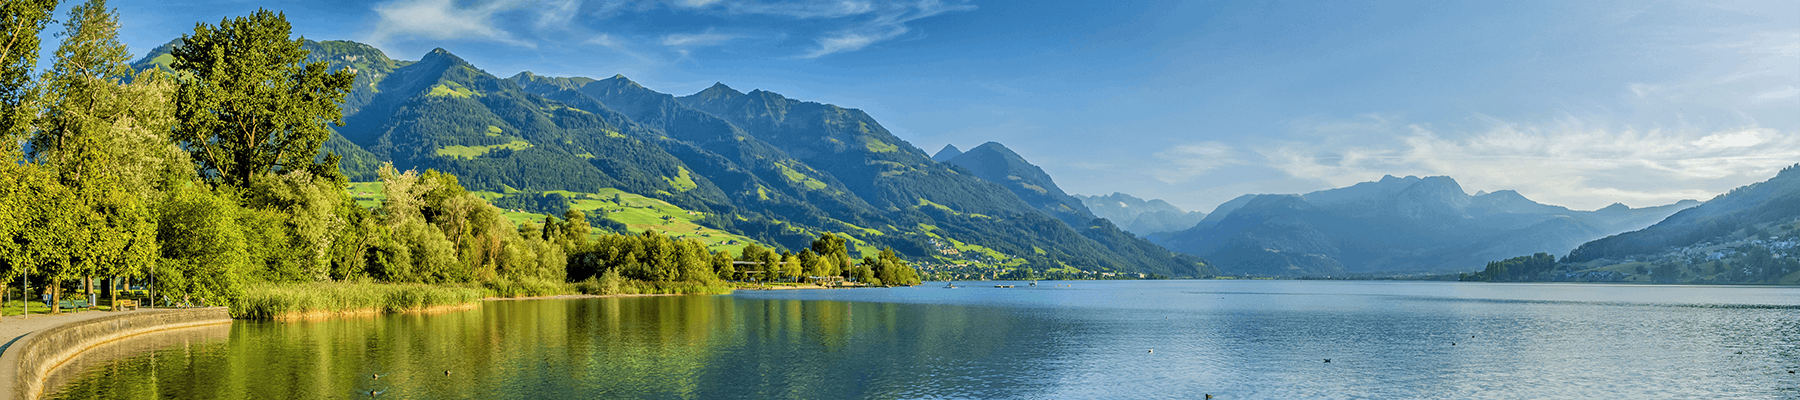 Idées d’excursions au cœur de la Suisse, dans la région de villégiature d’Obwald